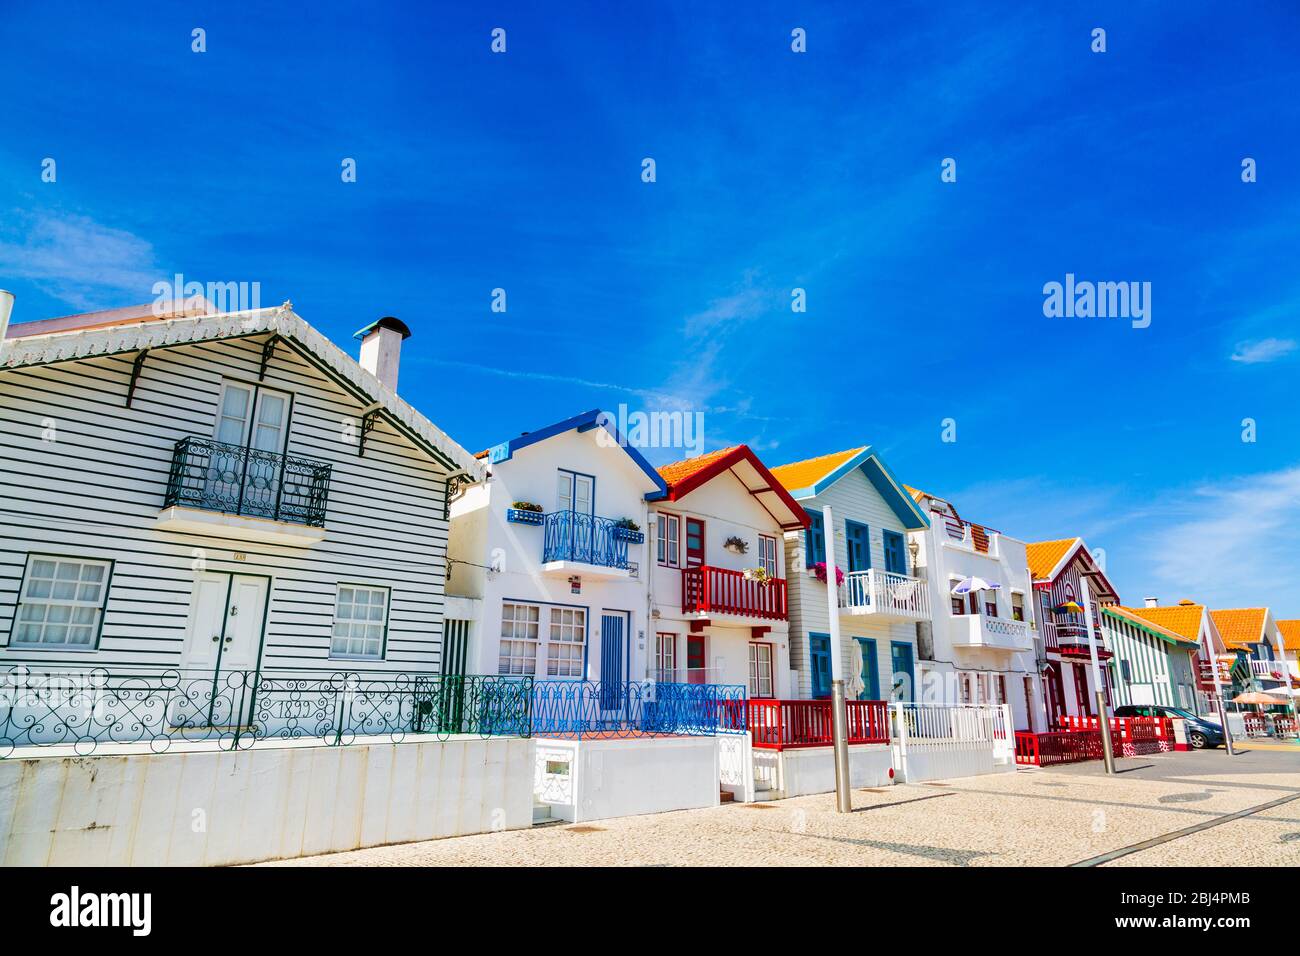 Costa Nova, Portugal: Bunt gestreifte Häuser genannt Palheiros im Strandresort an der Atlantikküste in der Nähe von Aveiro. Stockfoto